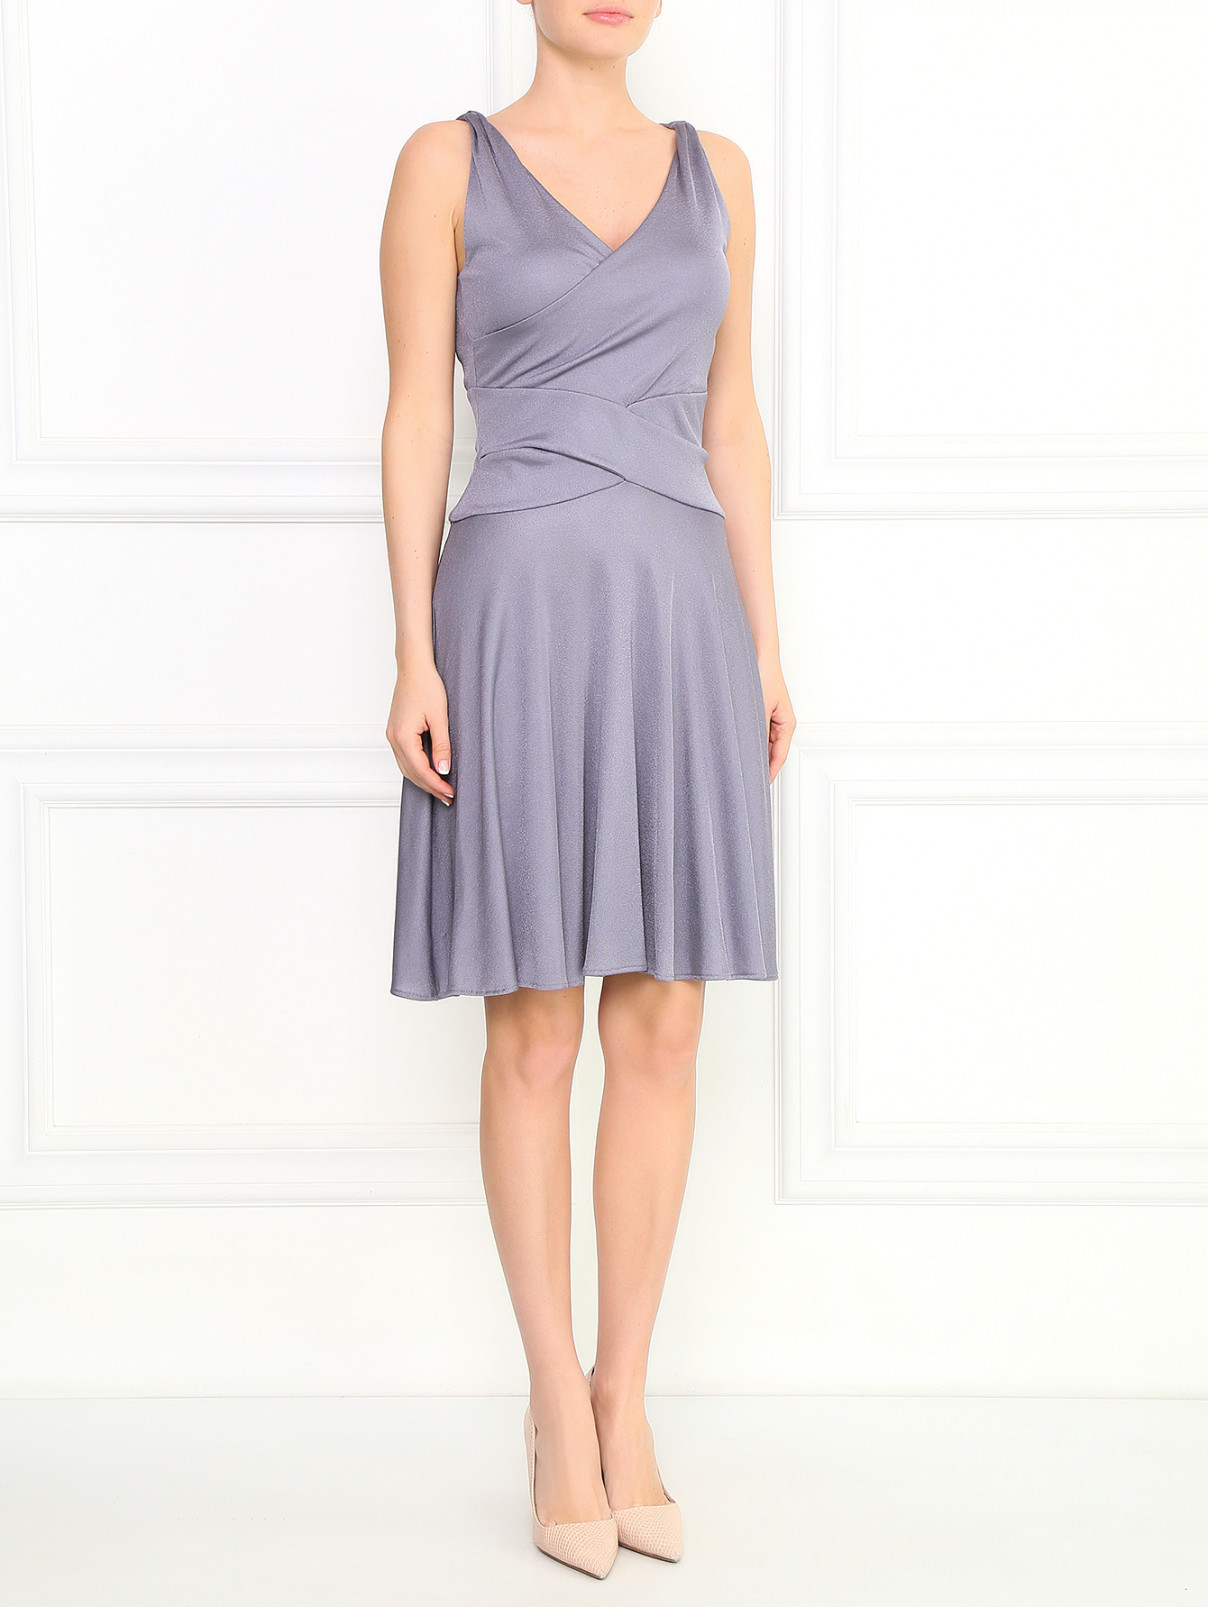 Трикотажное платье с драпировками Emporio Armani  –  Модель Общий вид  – Цвет:  Серый